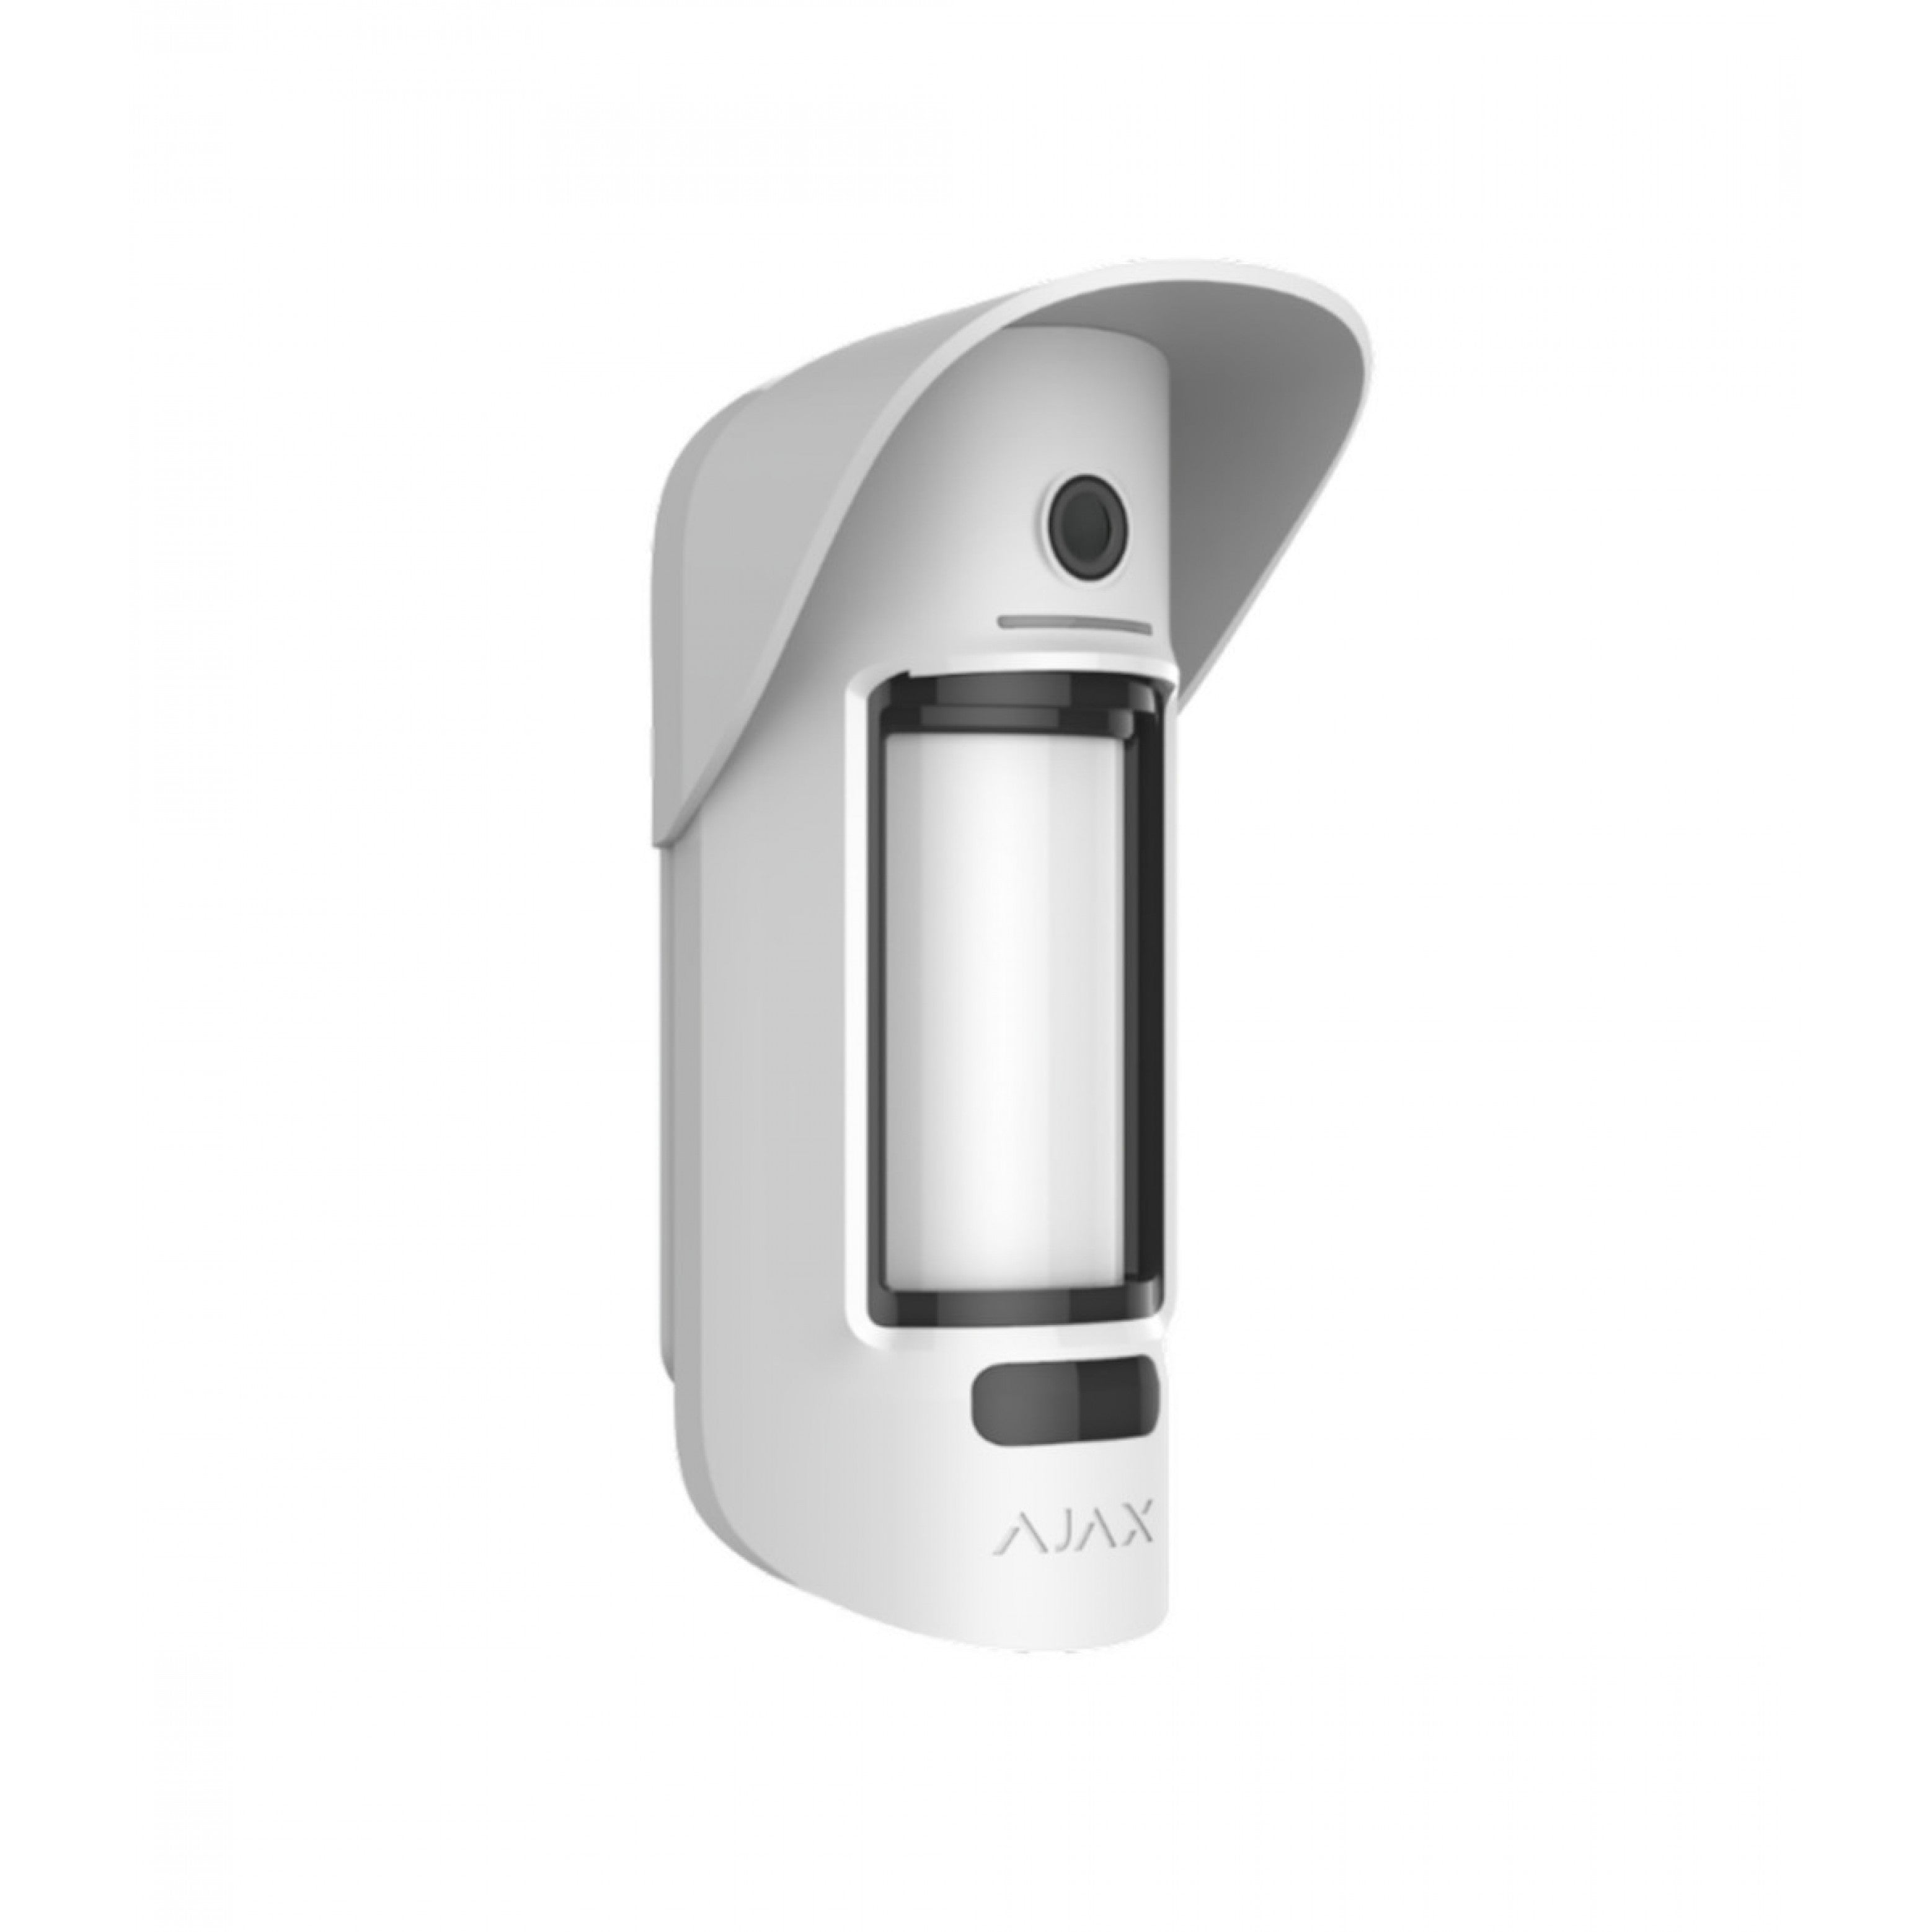 O Ajax MotionCam Outdoor (PhOD) Jeweller é um detetor de movimentos para exteriores e equipado com um sistema automático de deteção de intrusão e roubo (SADIR).